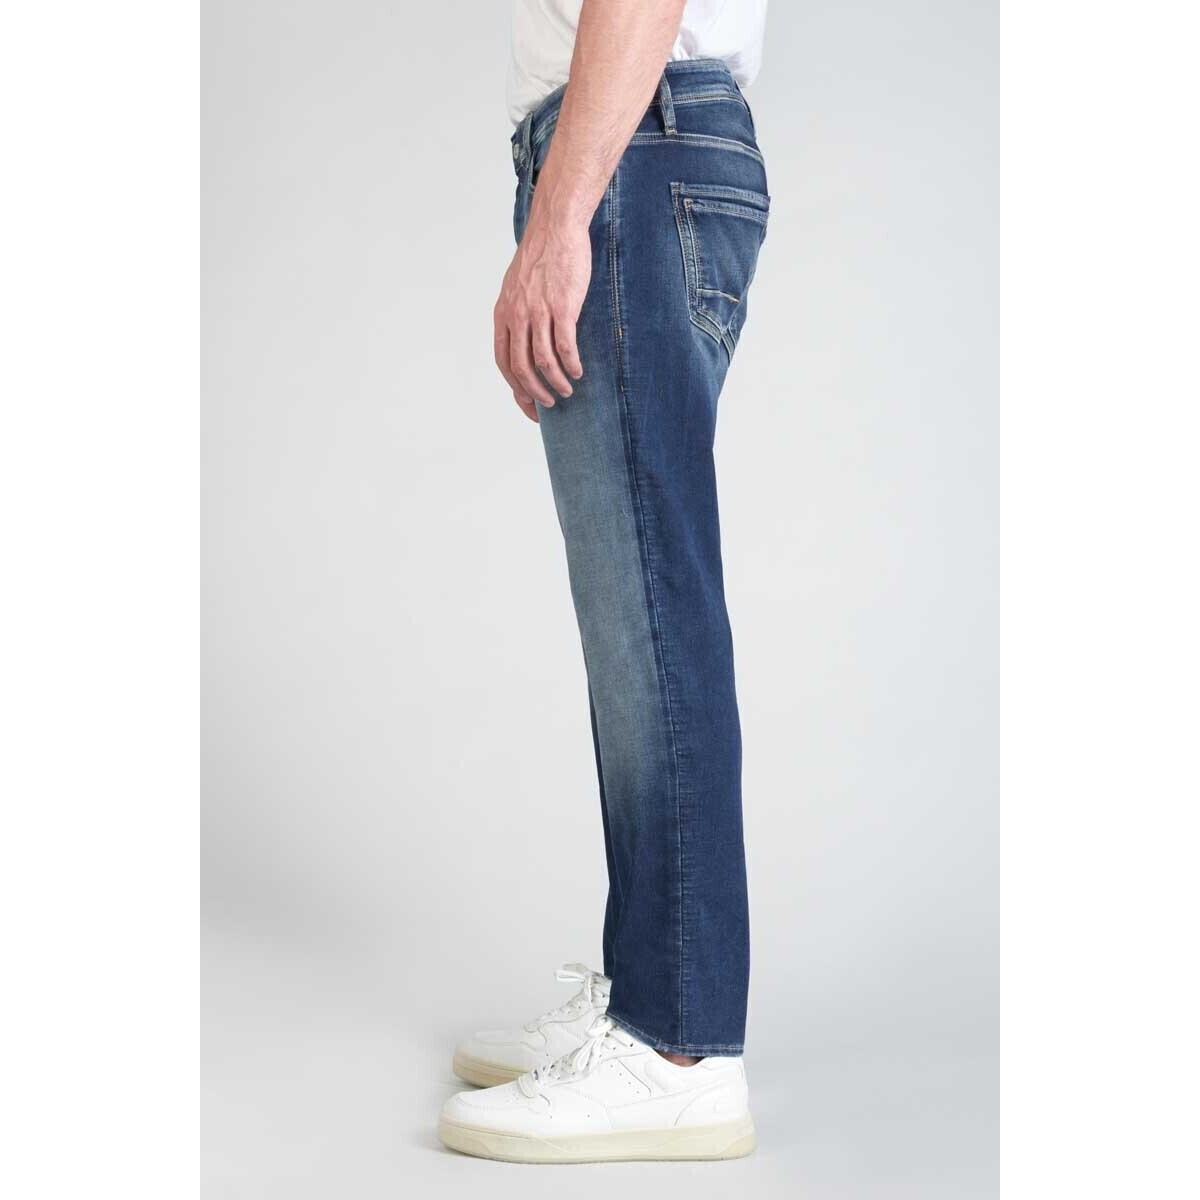 Le Temps des Cerises Bleu Jogg 700/11 adjusted jeans bleu dE8wSRxp